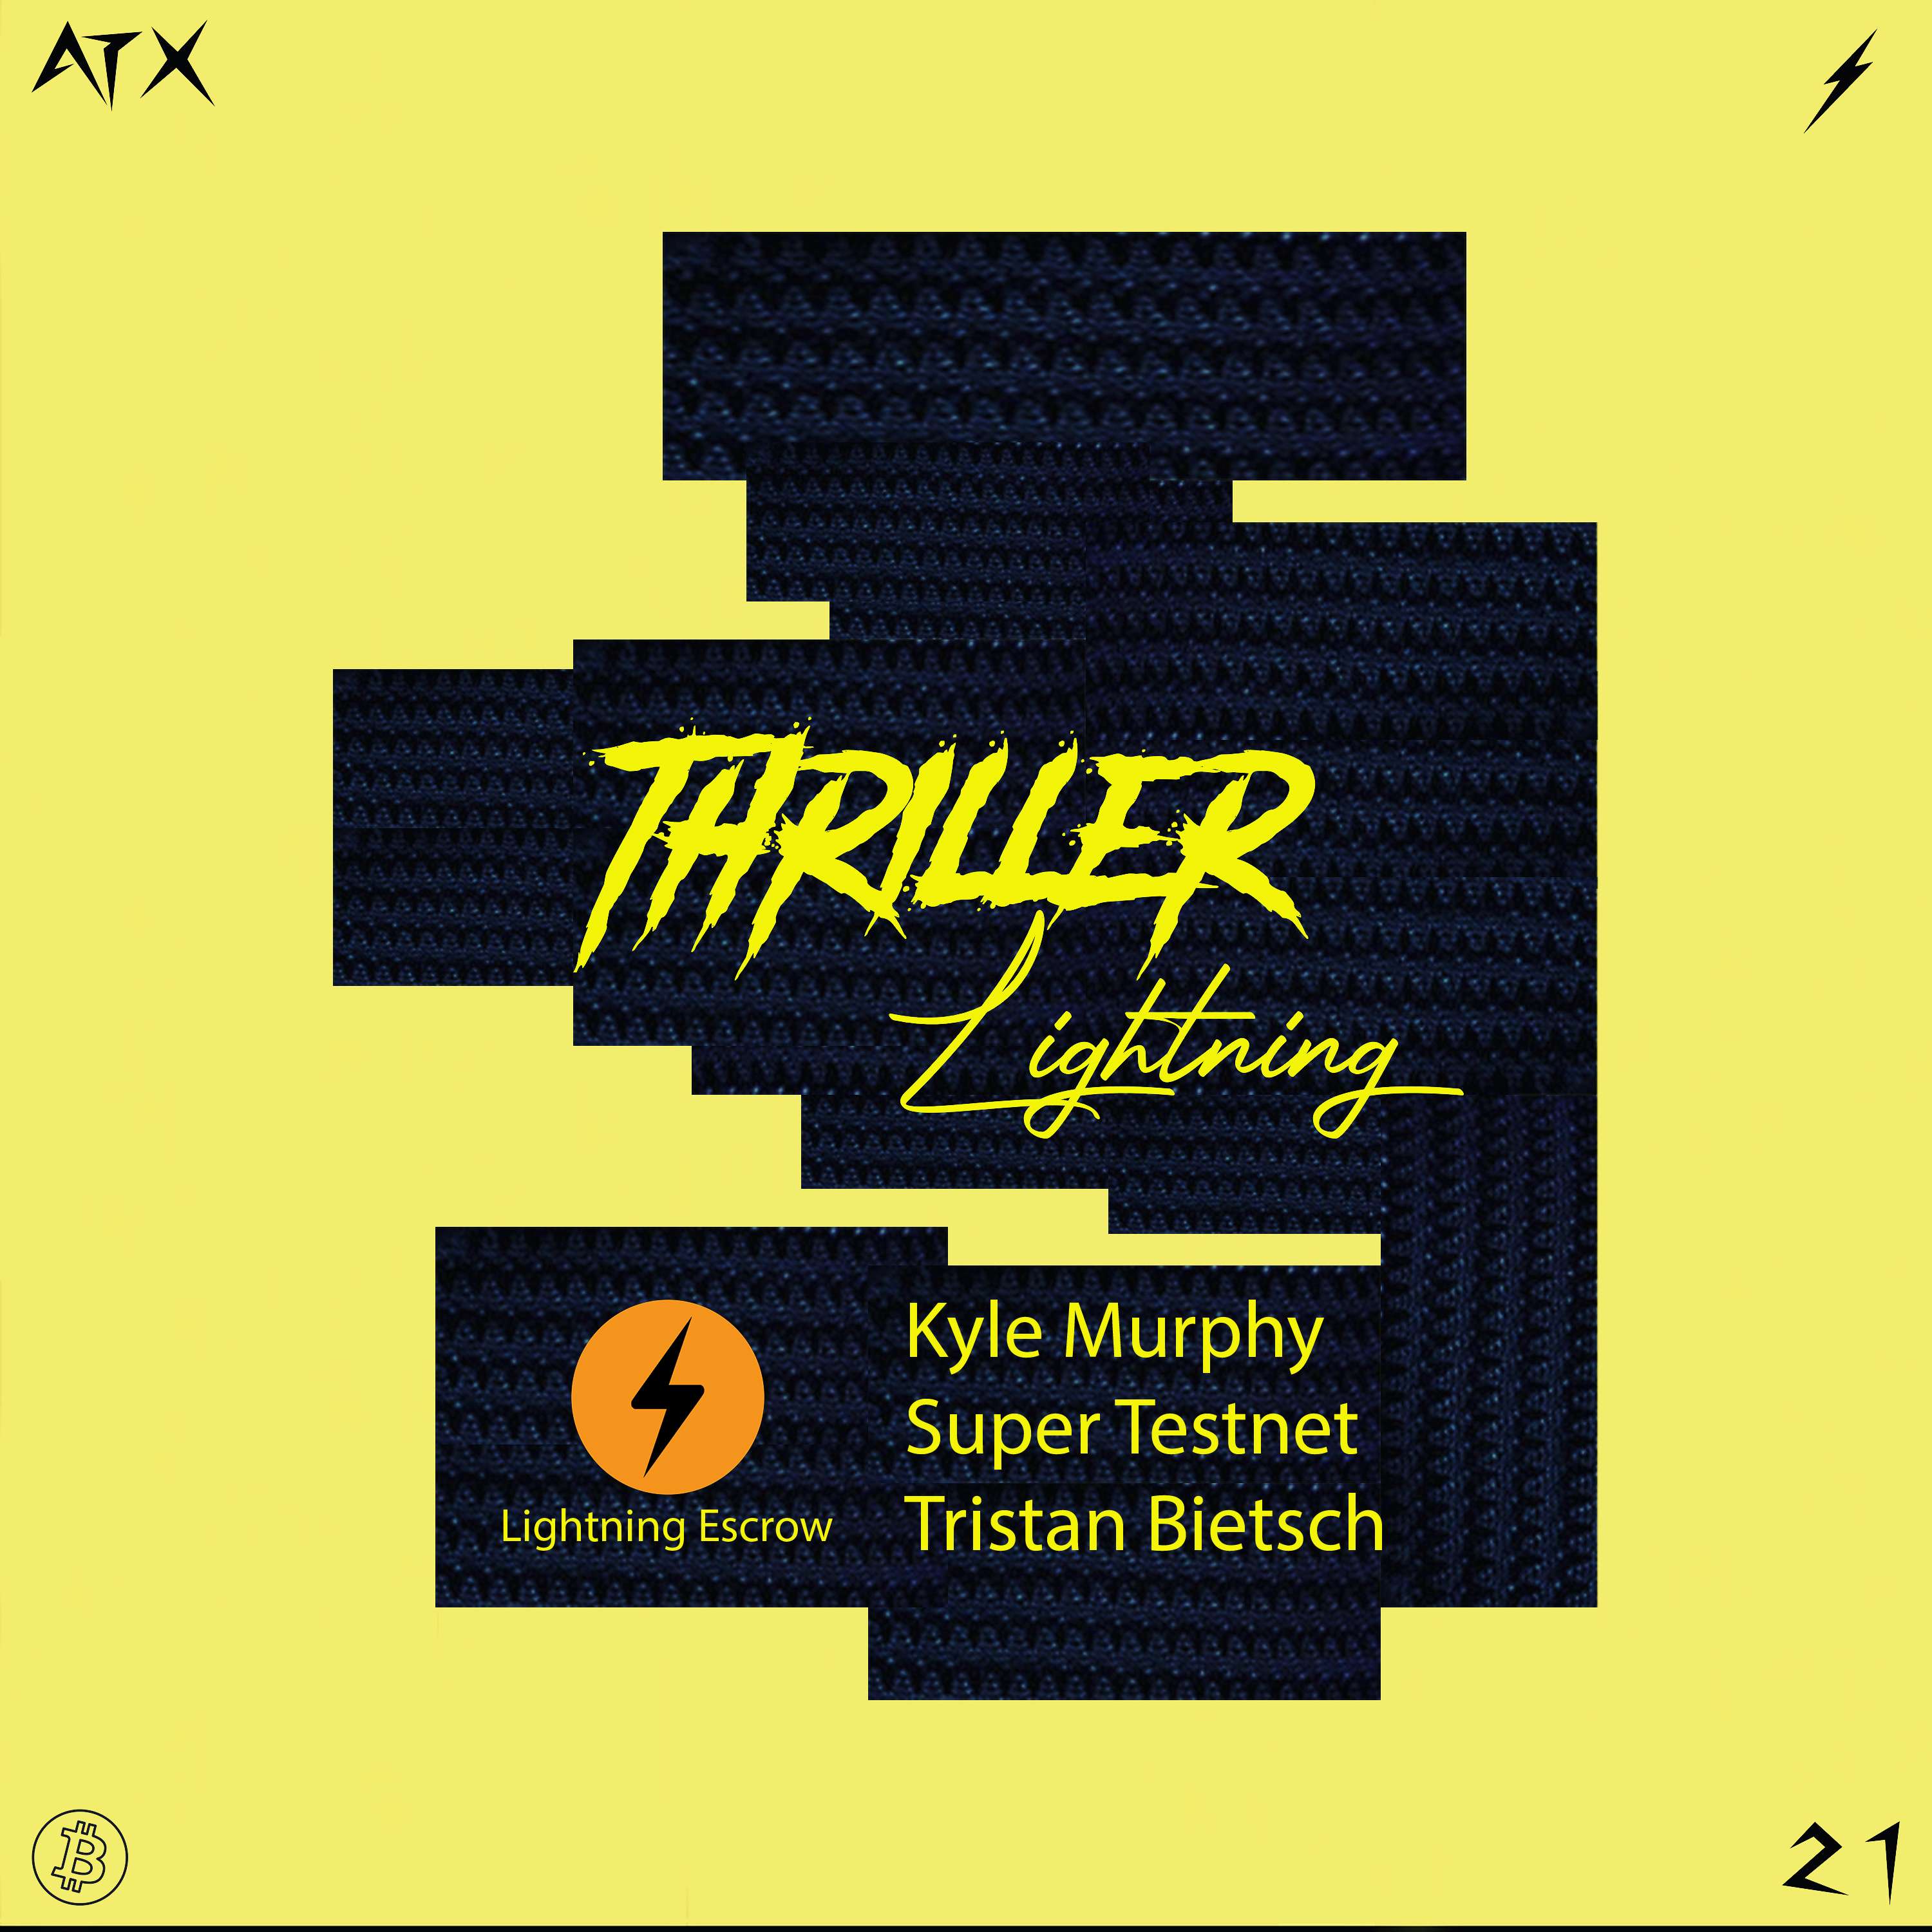 Thriller Lightning: Lightning Escrow - Kyle Murphy, Super Testnet and Tristan Bietsch